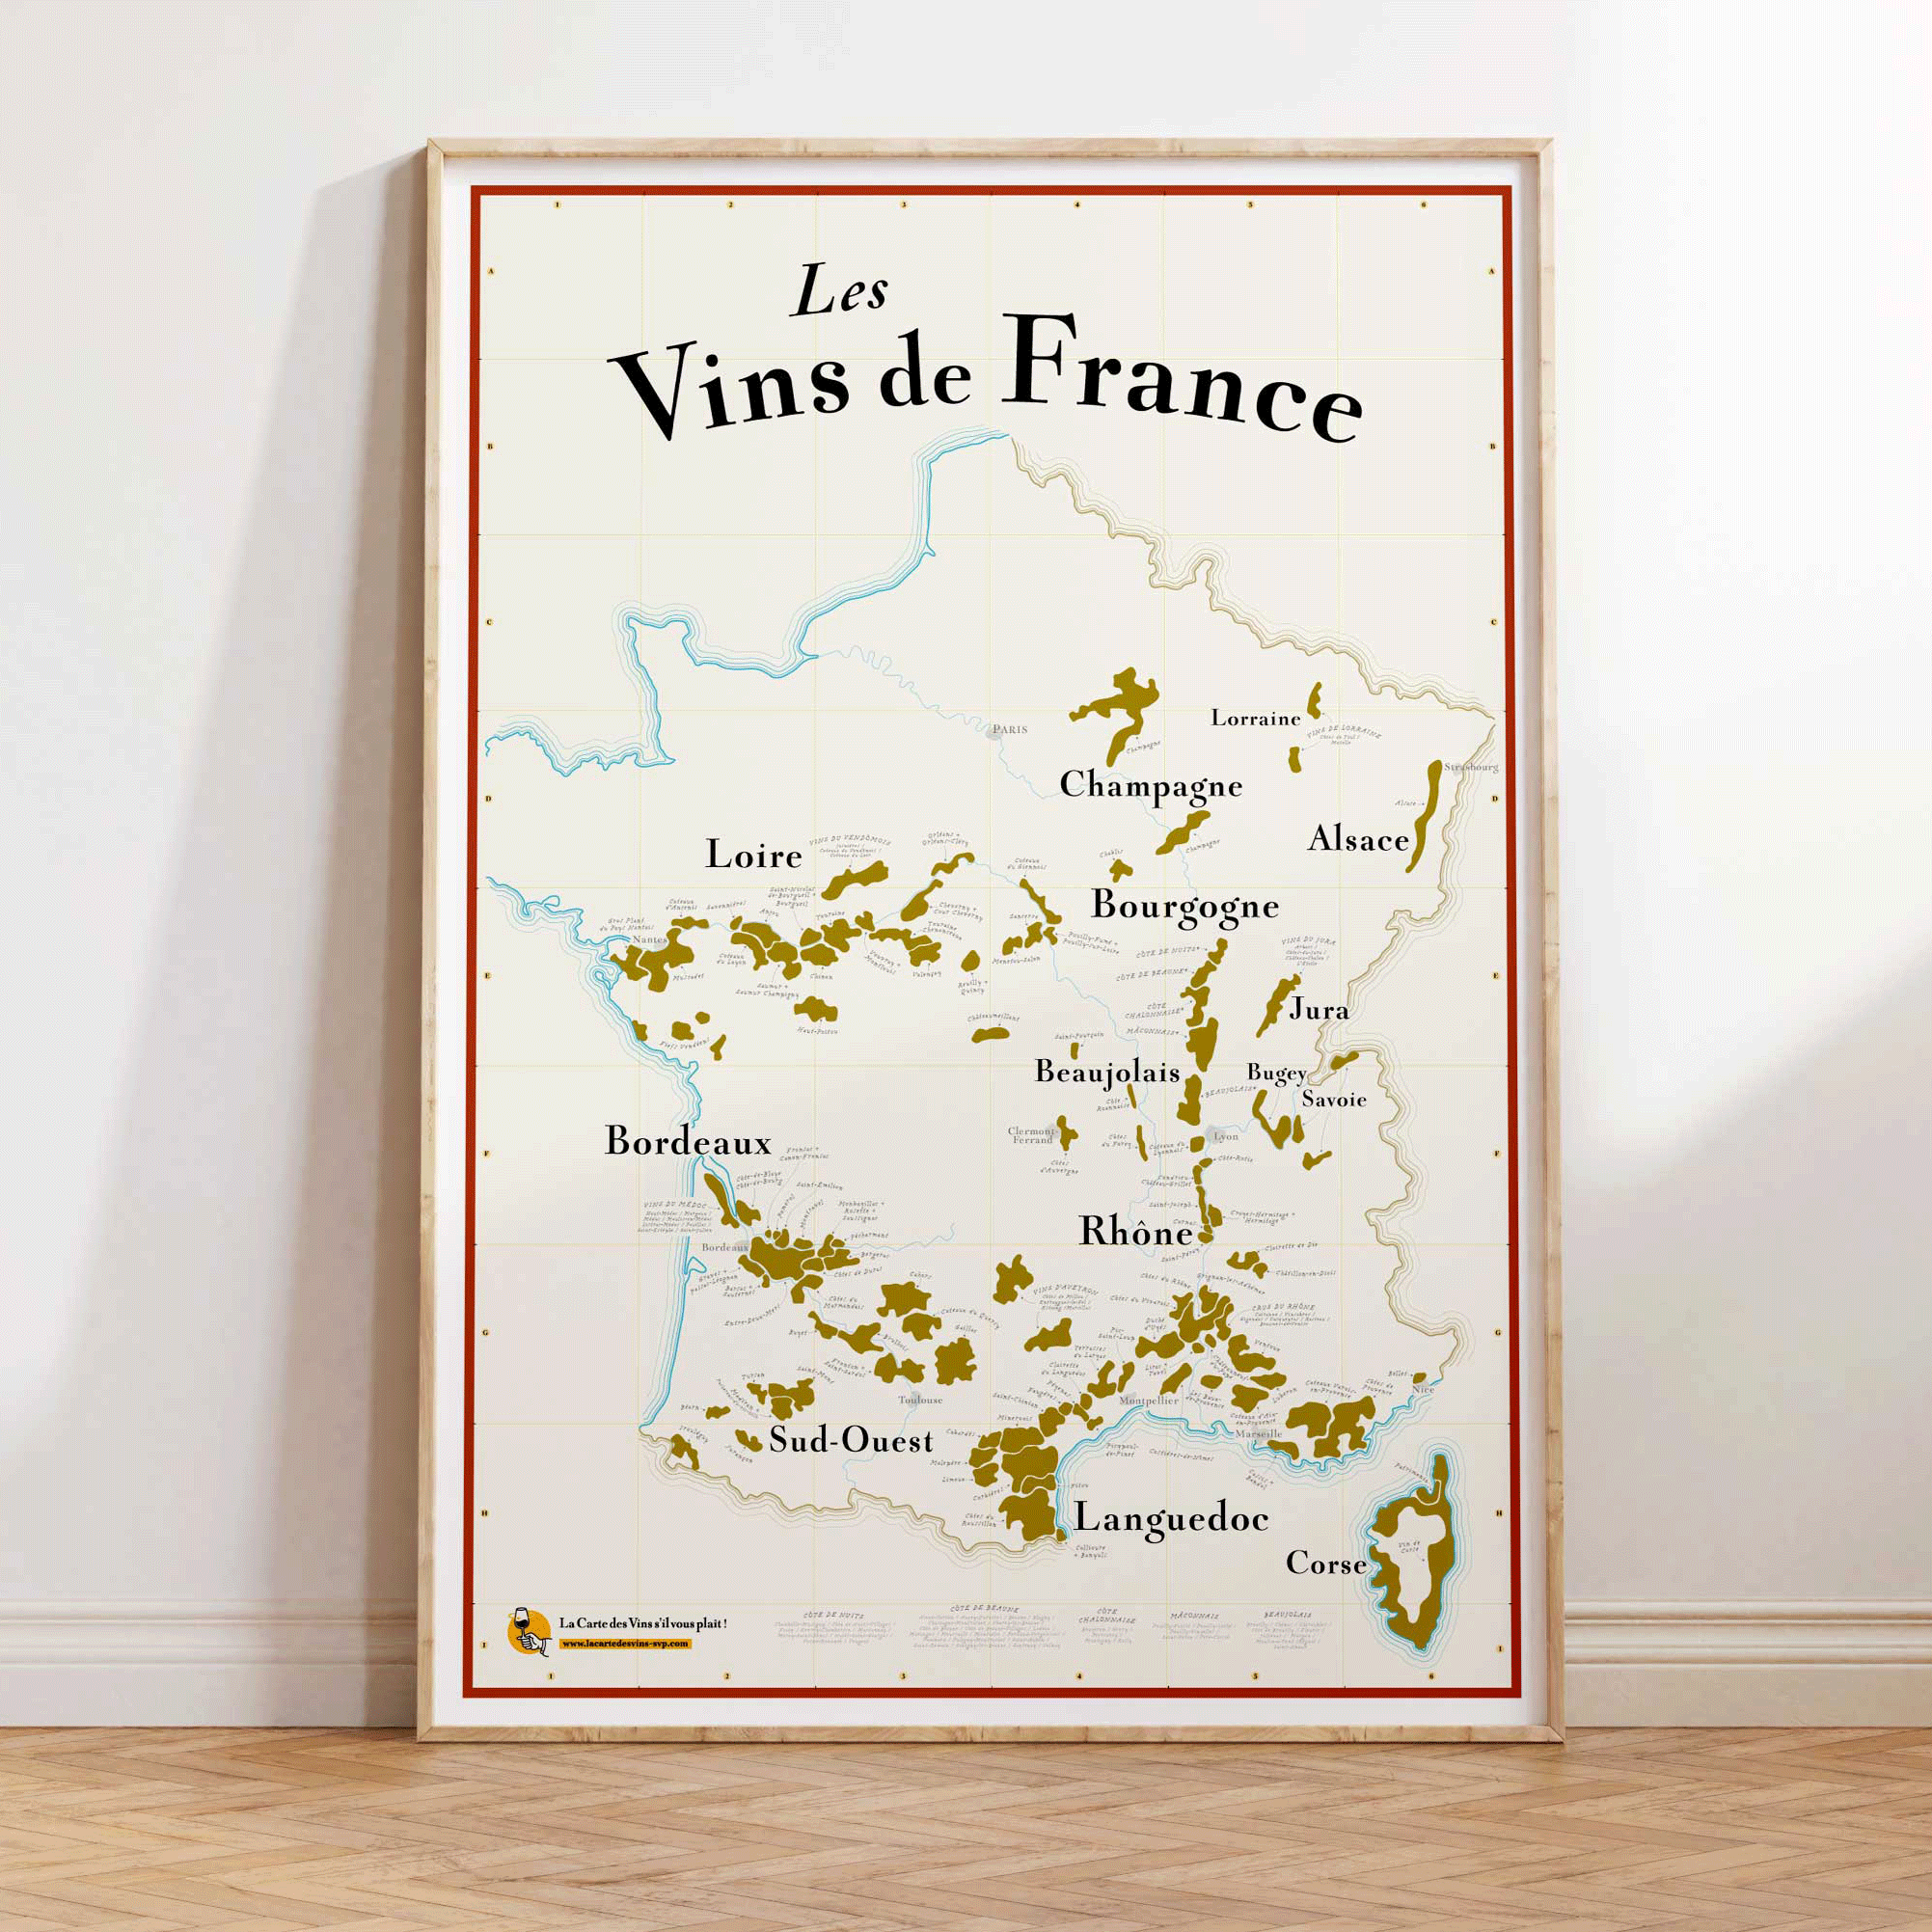 Carte des Vins de France à gratter (NOUVEAU) – La Carte des Vins s'il vous  plaît